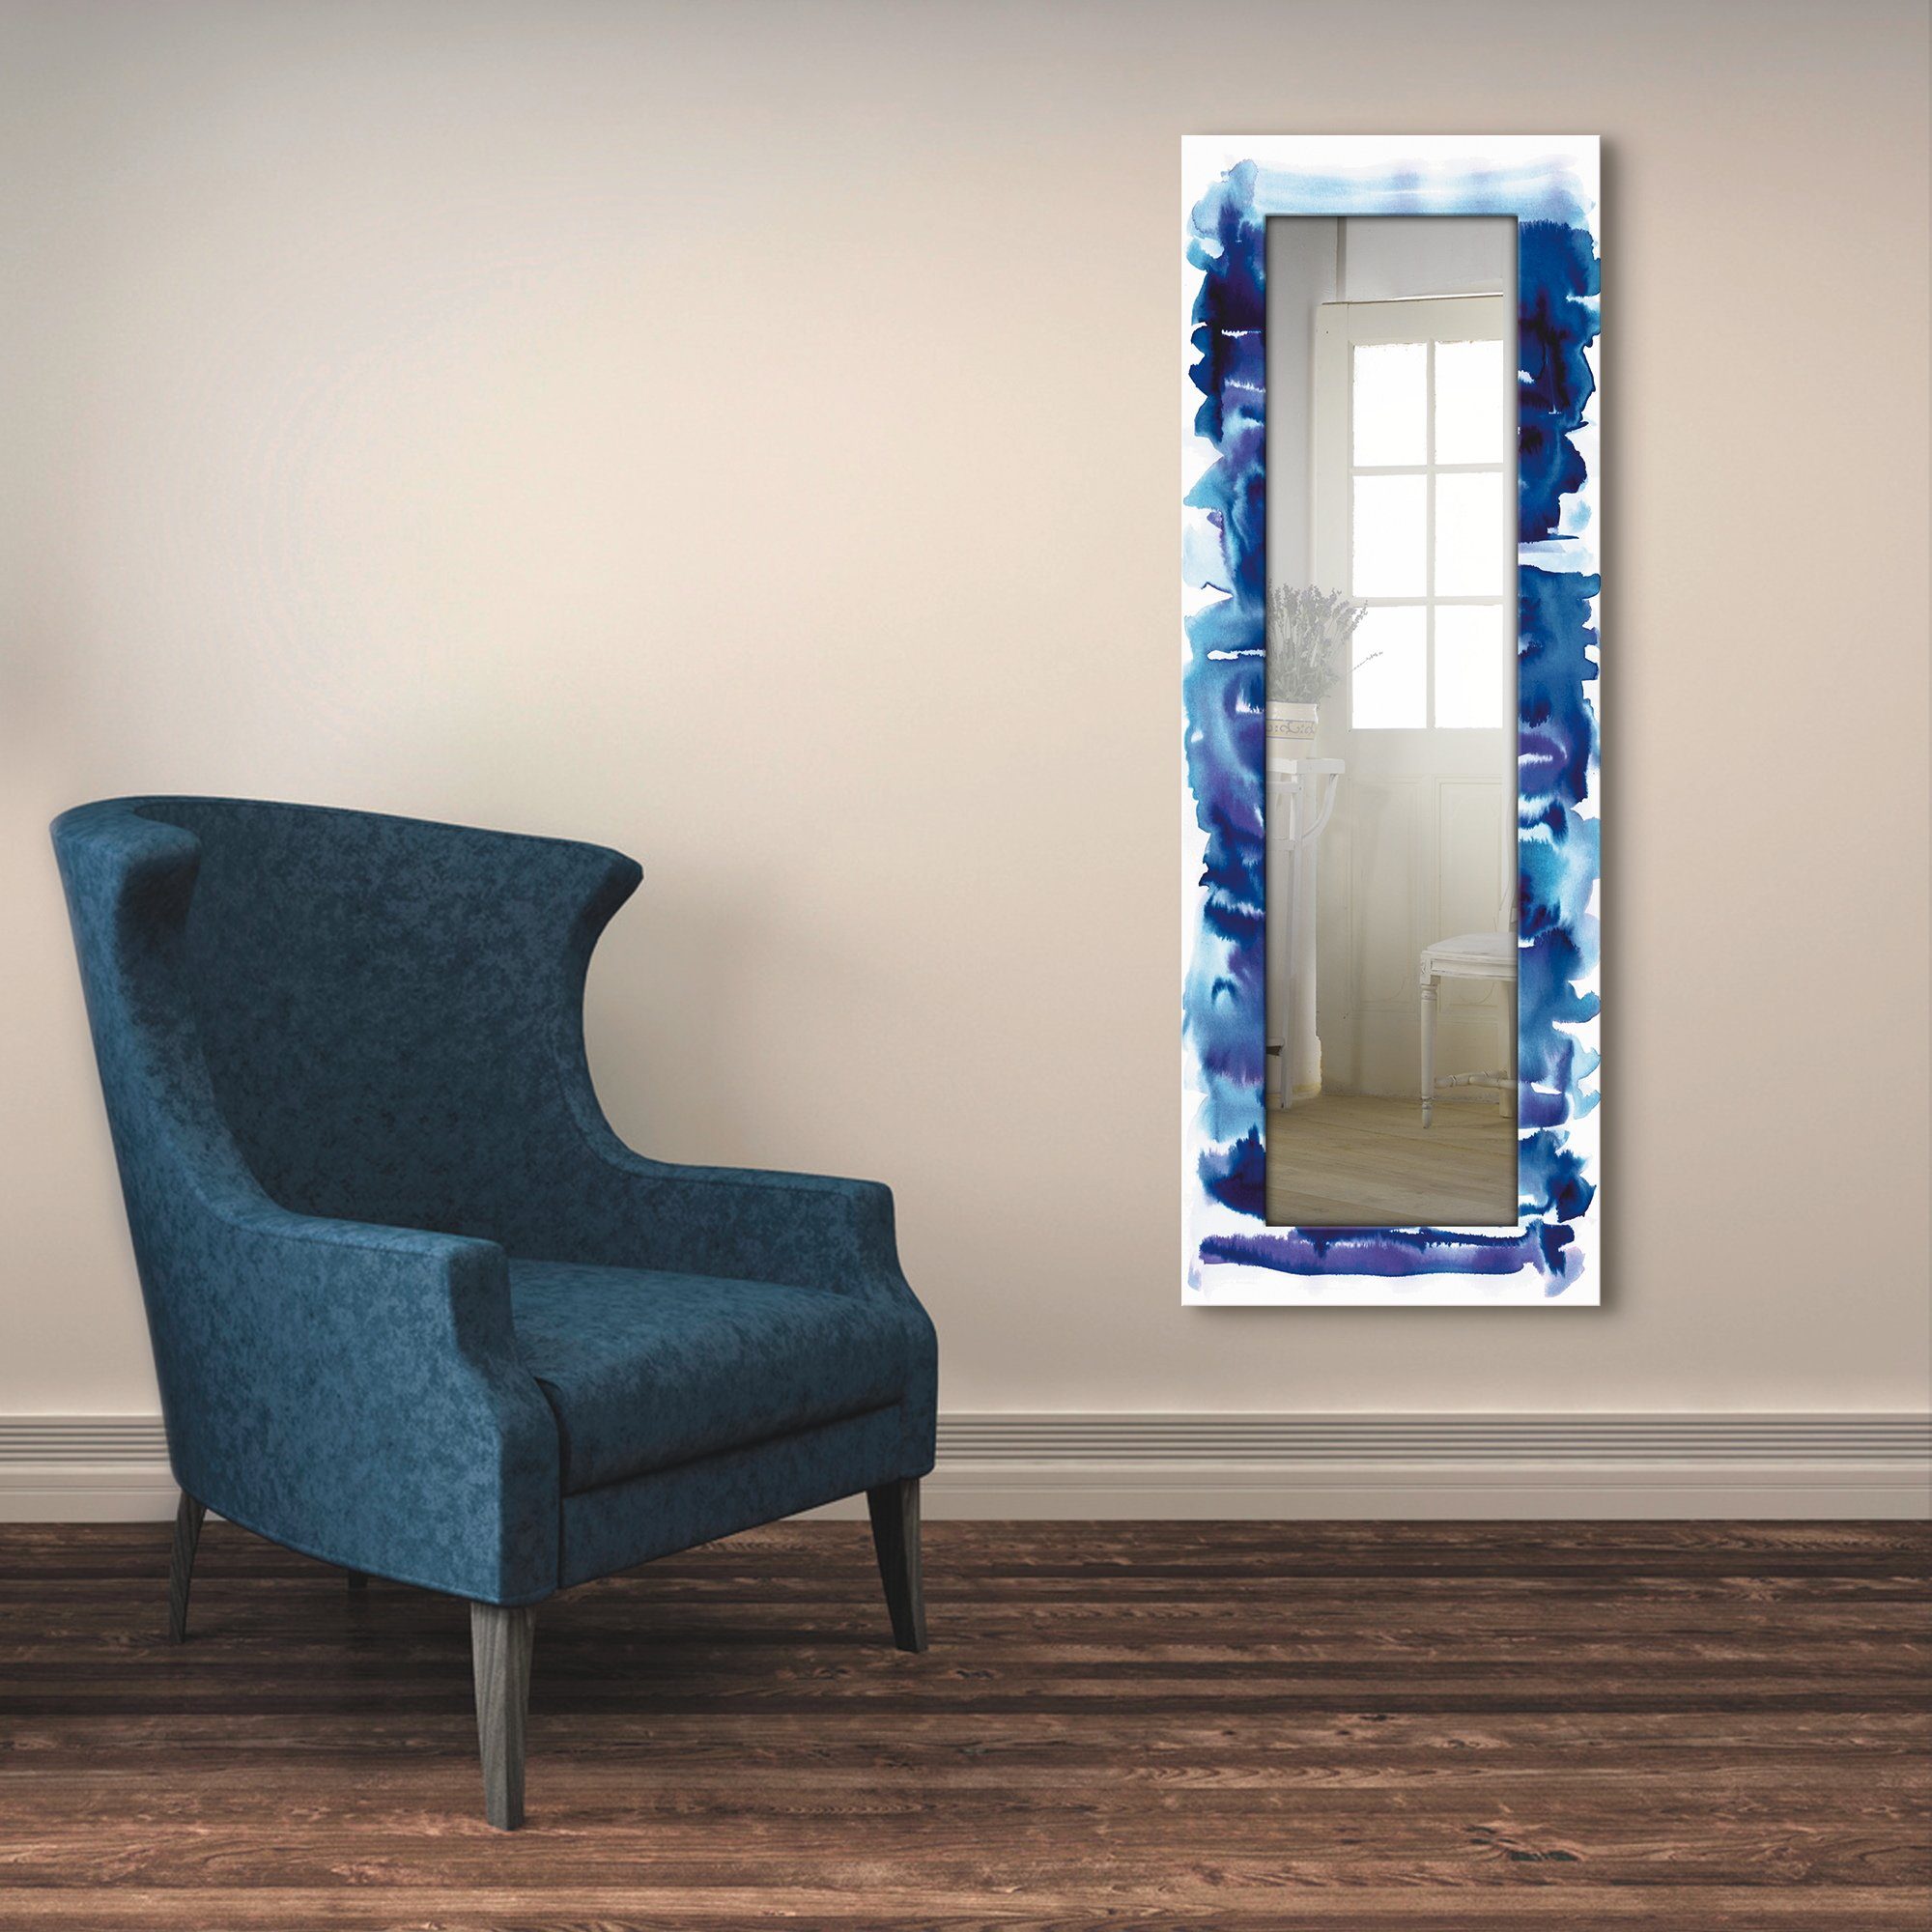 Artland Ganzkörperspiegel, Wandspiegel, mit Motivrahmen, in Landhaus Dekospiegel gerahmter Aquarell blau,